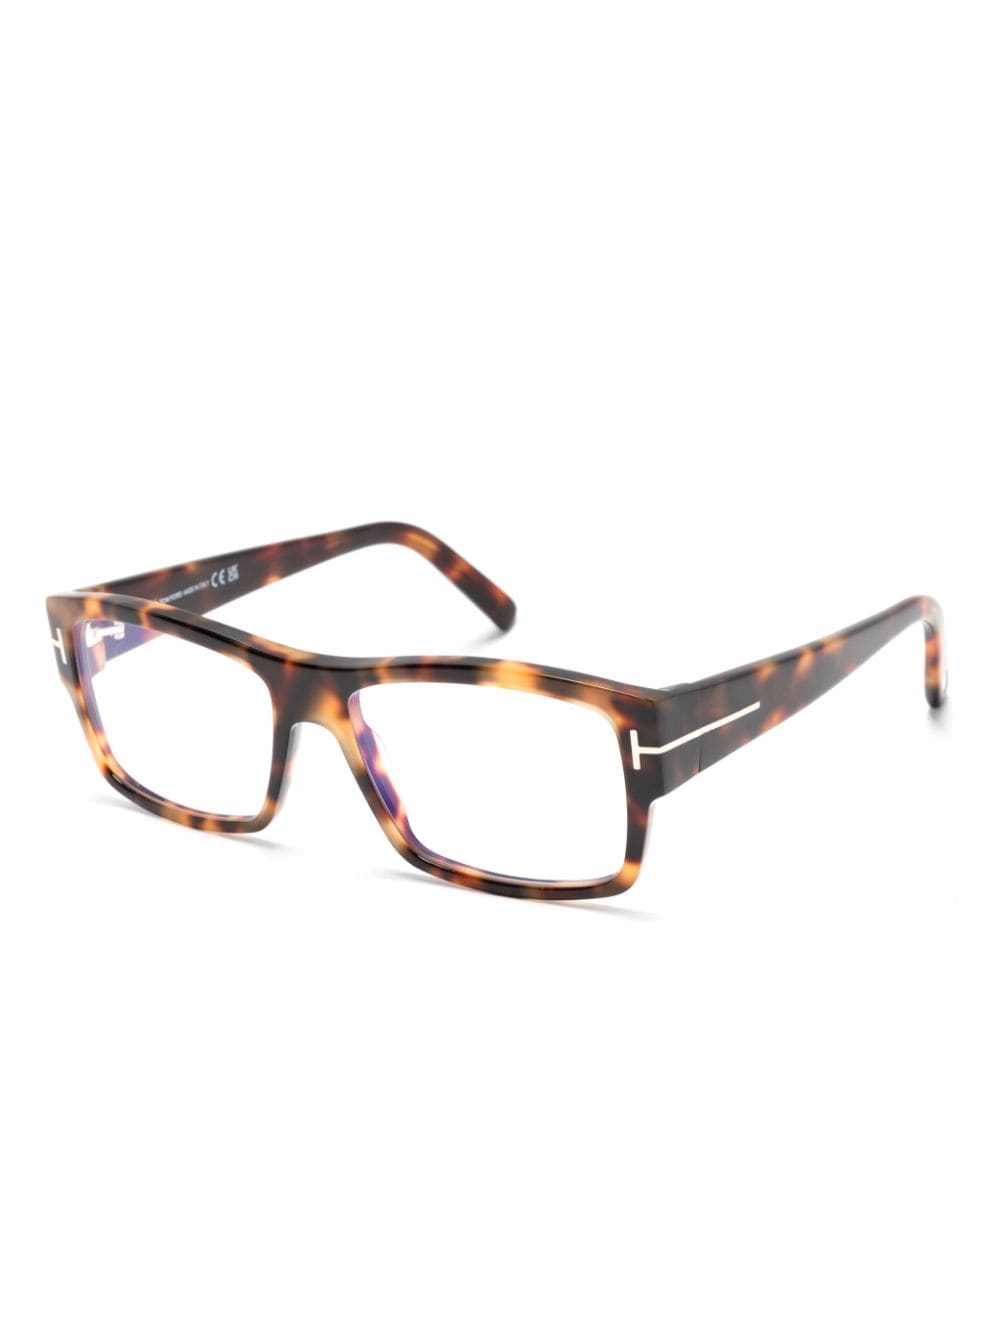 TOM FORD Eyewear tortoiseshell square-frame glasses - Bruin